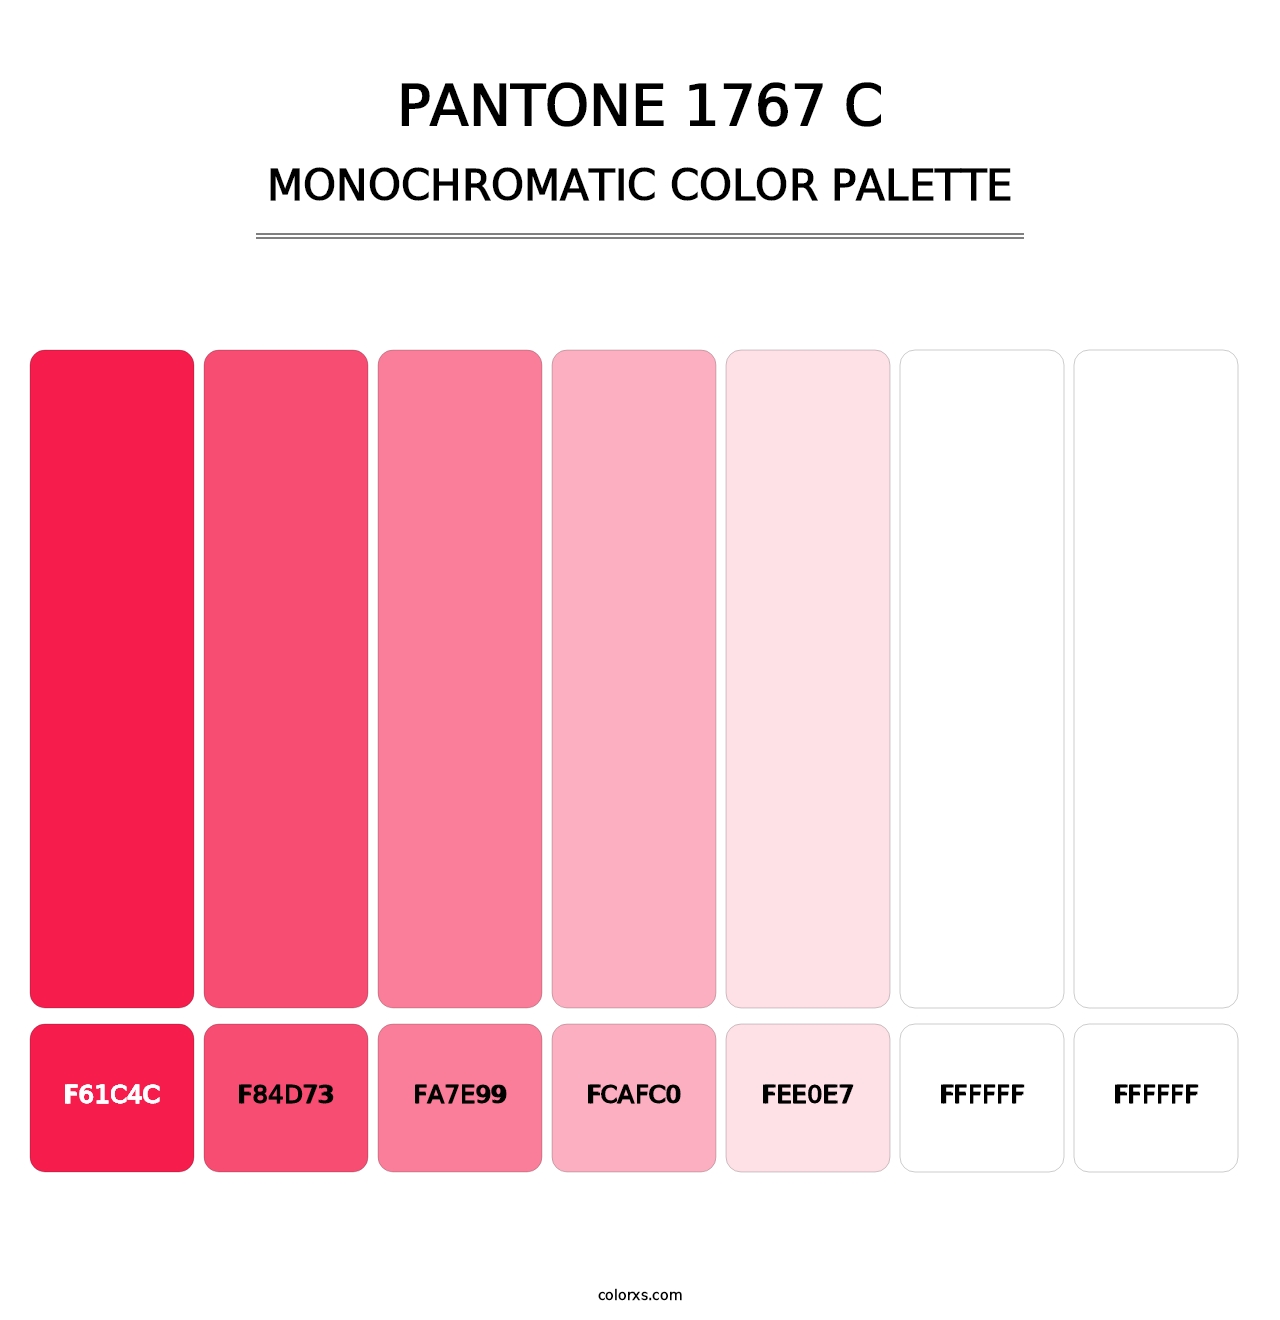 PANTONE 1767 C - Monochromatic Color Palette